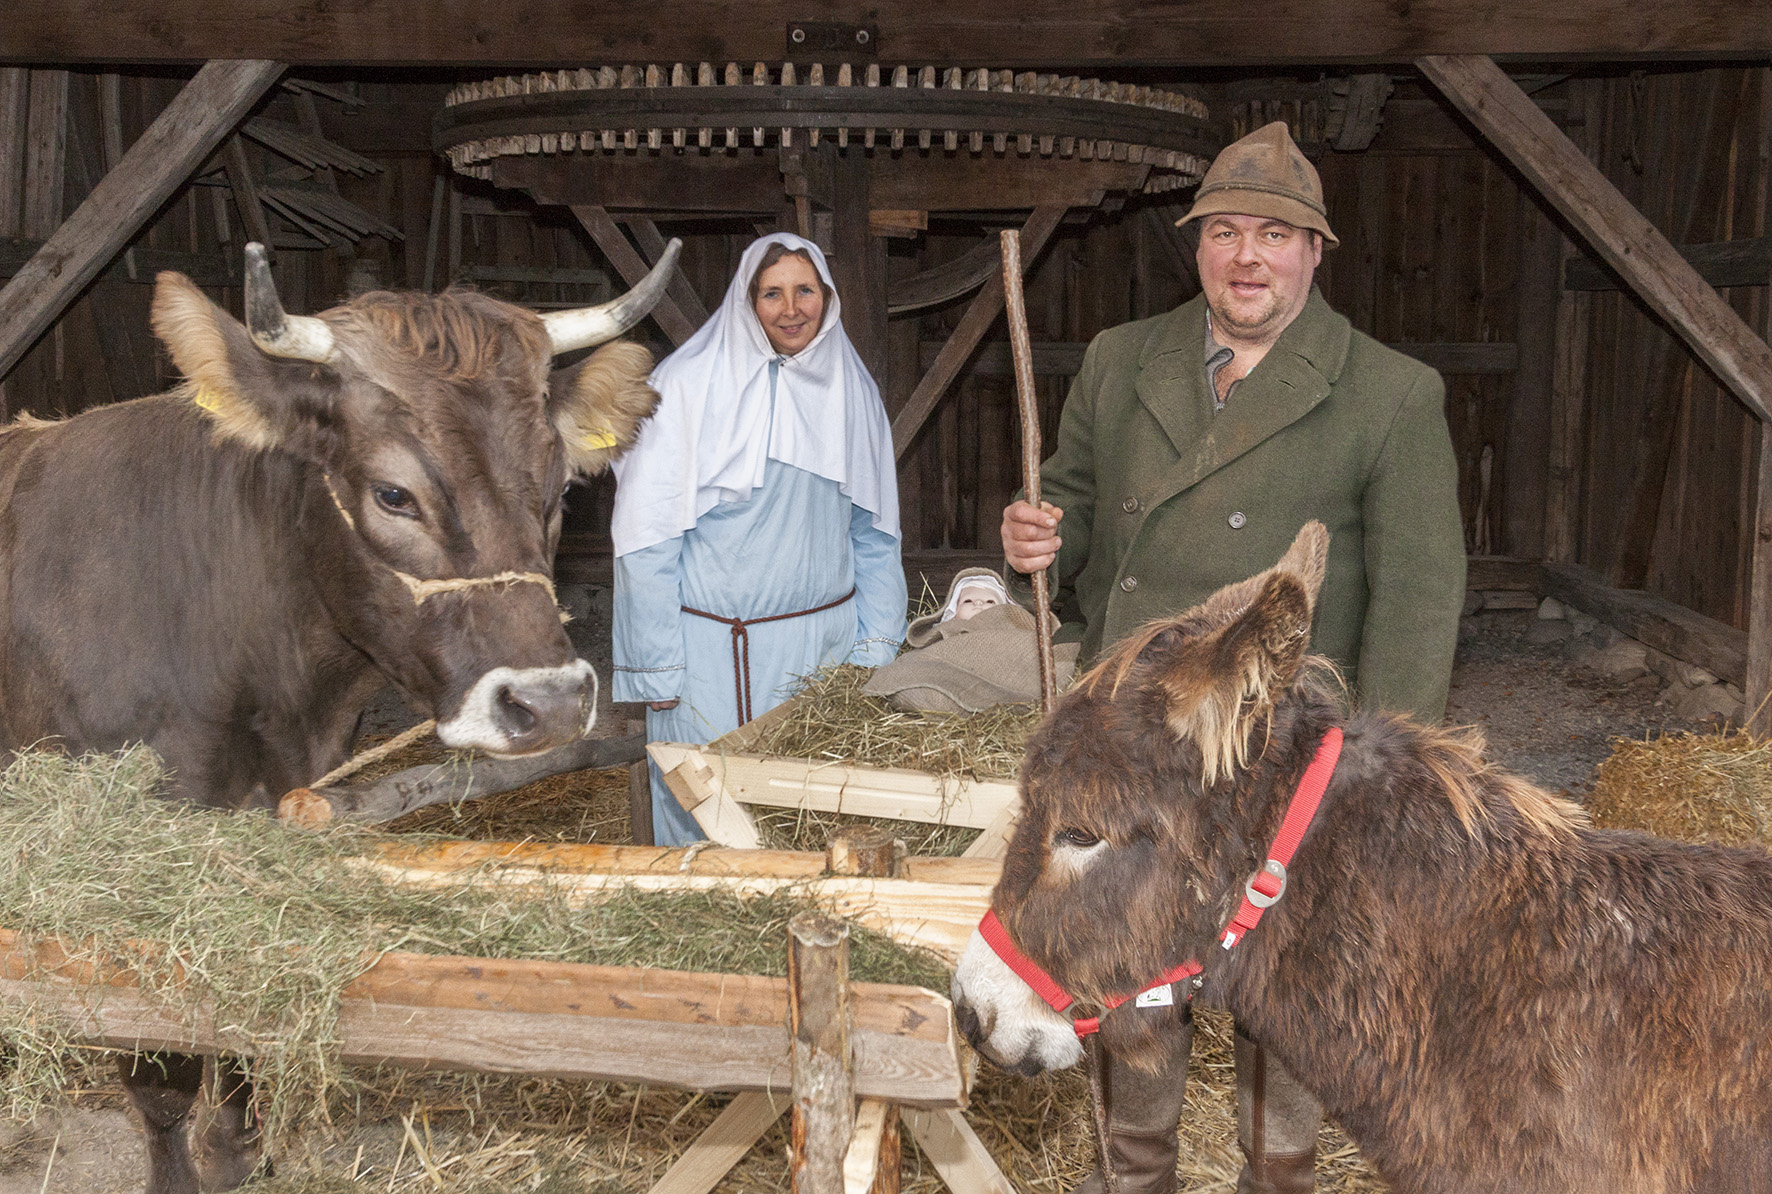 Die lebende Weihnachtskrippe mit Maria und Joseph, Ochs und Esel ist eine ganz besondere Attraktion. Für Museumslandwirt Helmut Brader eine besondere Freude.